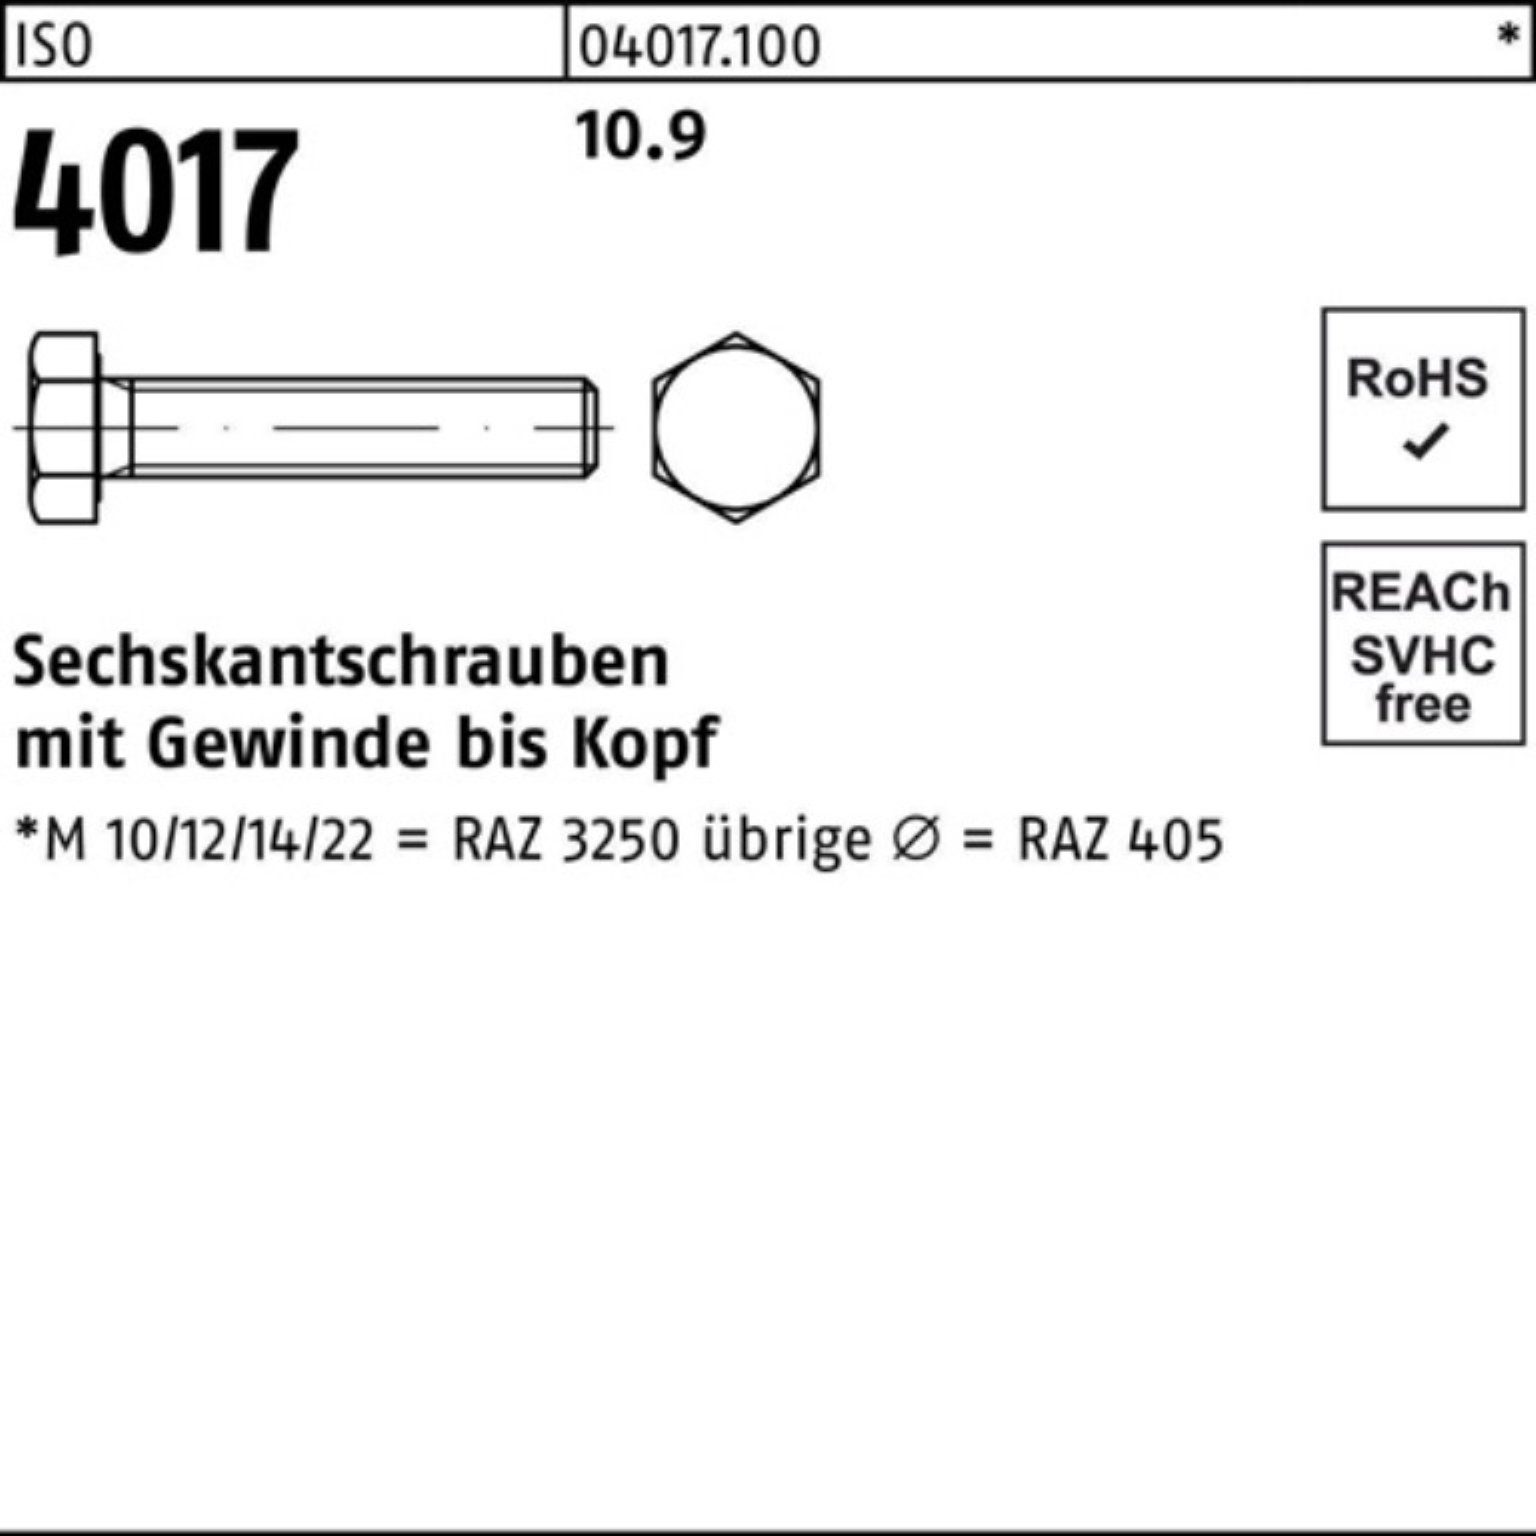 M16x Sechskantschraube Sechskantschraube 4017 Bufab 100er 50 40 ISO VG 45 10.9 Stück ISO Pack